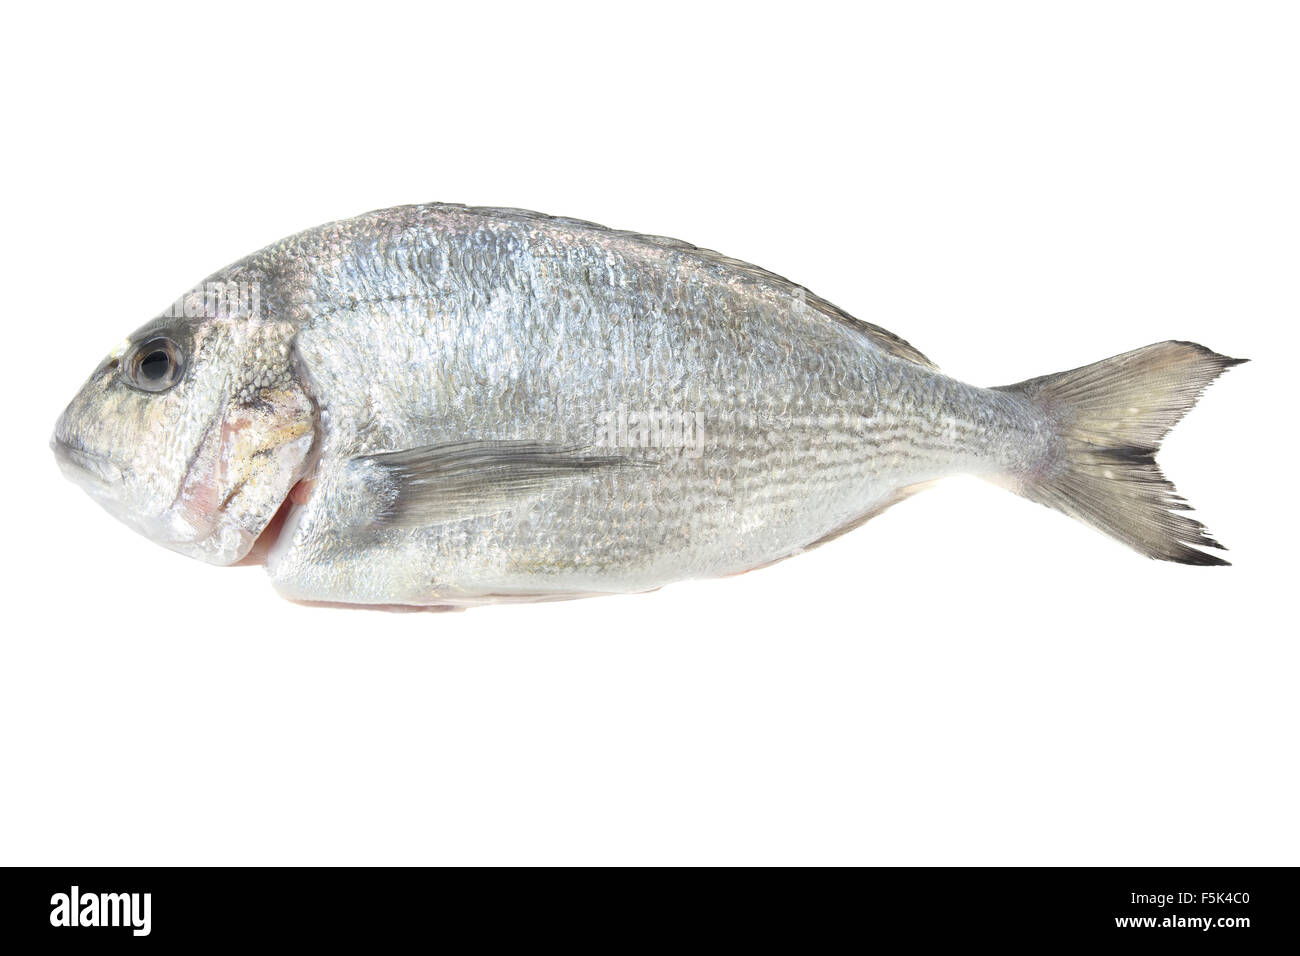 Dorada fruits de mer isolé sur fond blanc. Également connu sous le nom de dorade poisson de mer. Les aliments crus. Banque D'Images